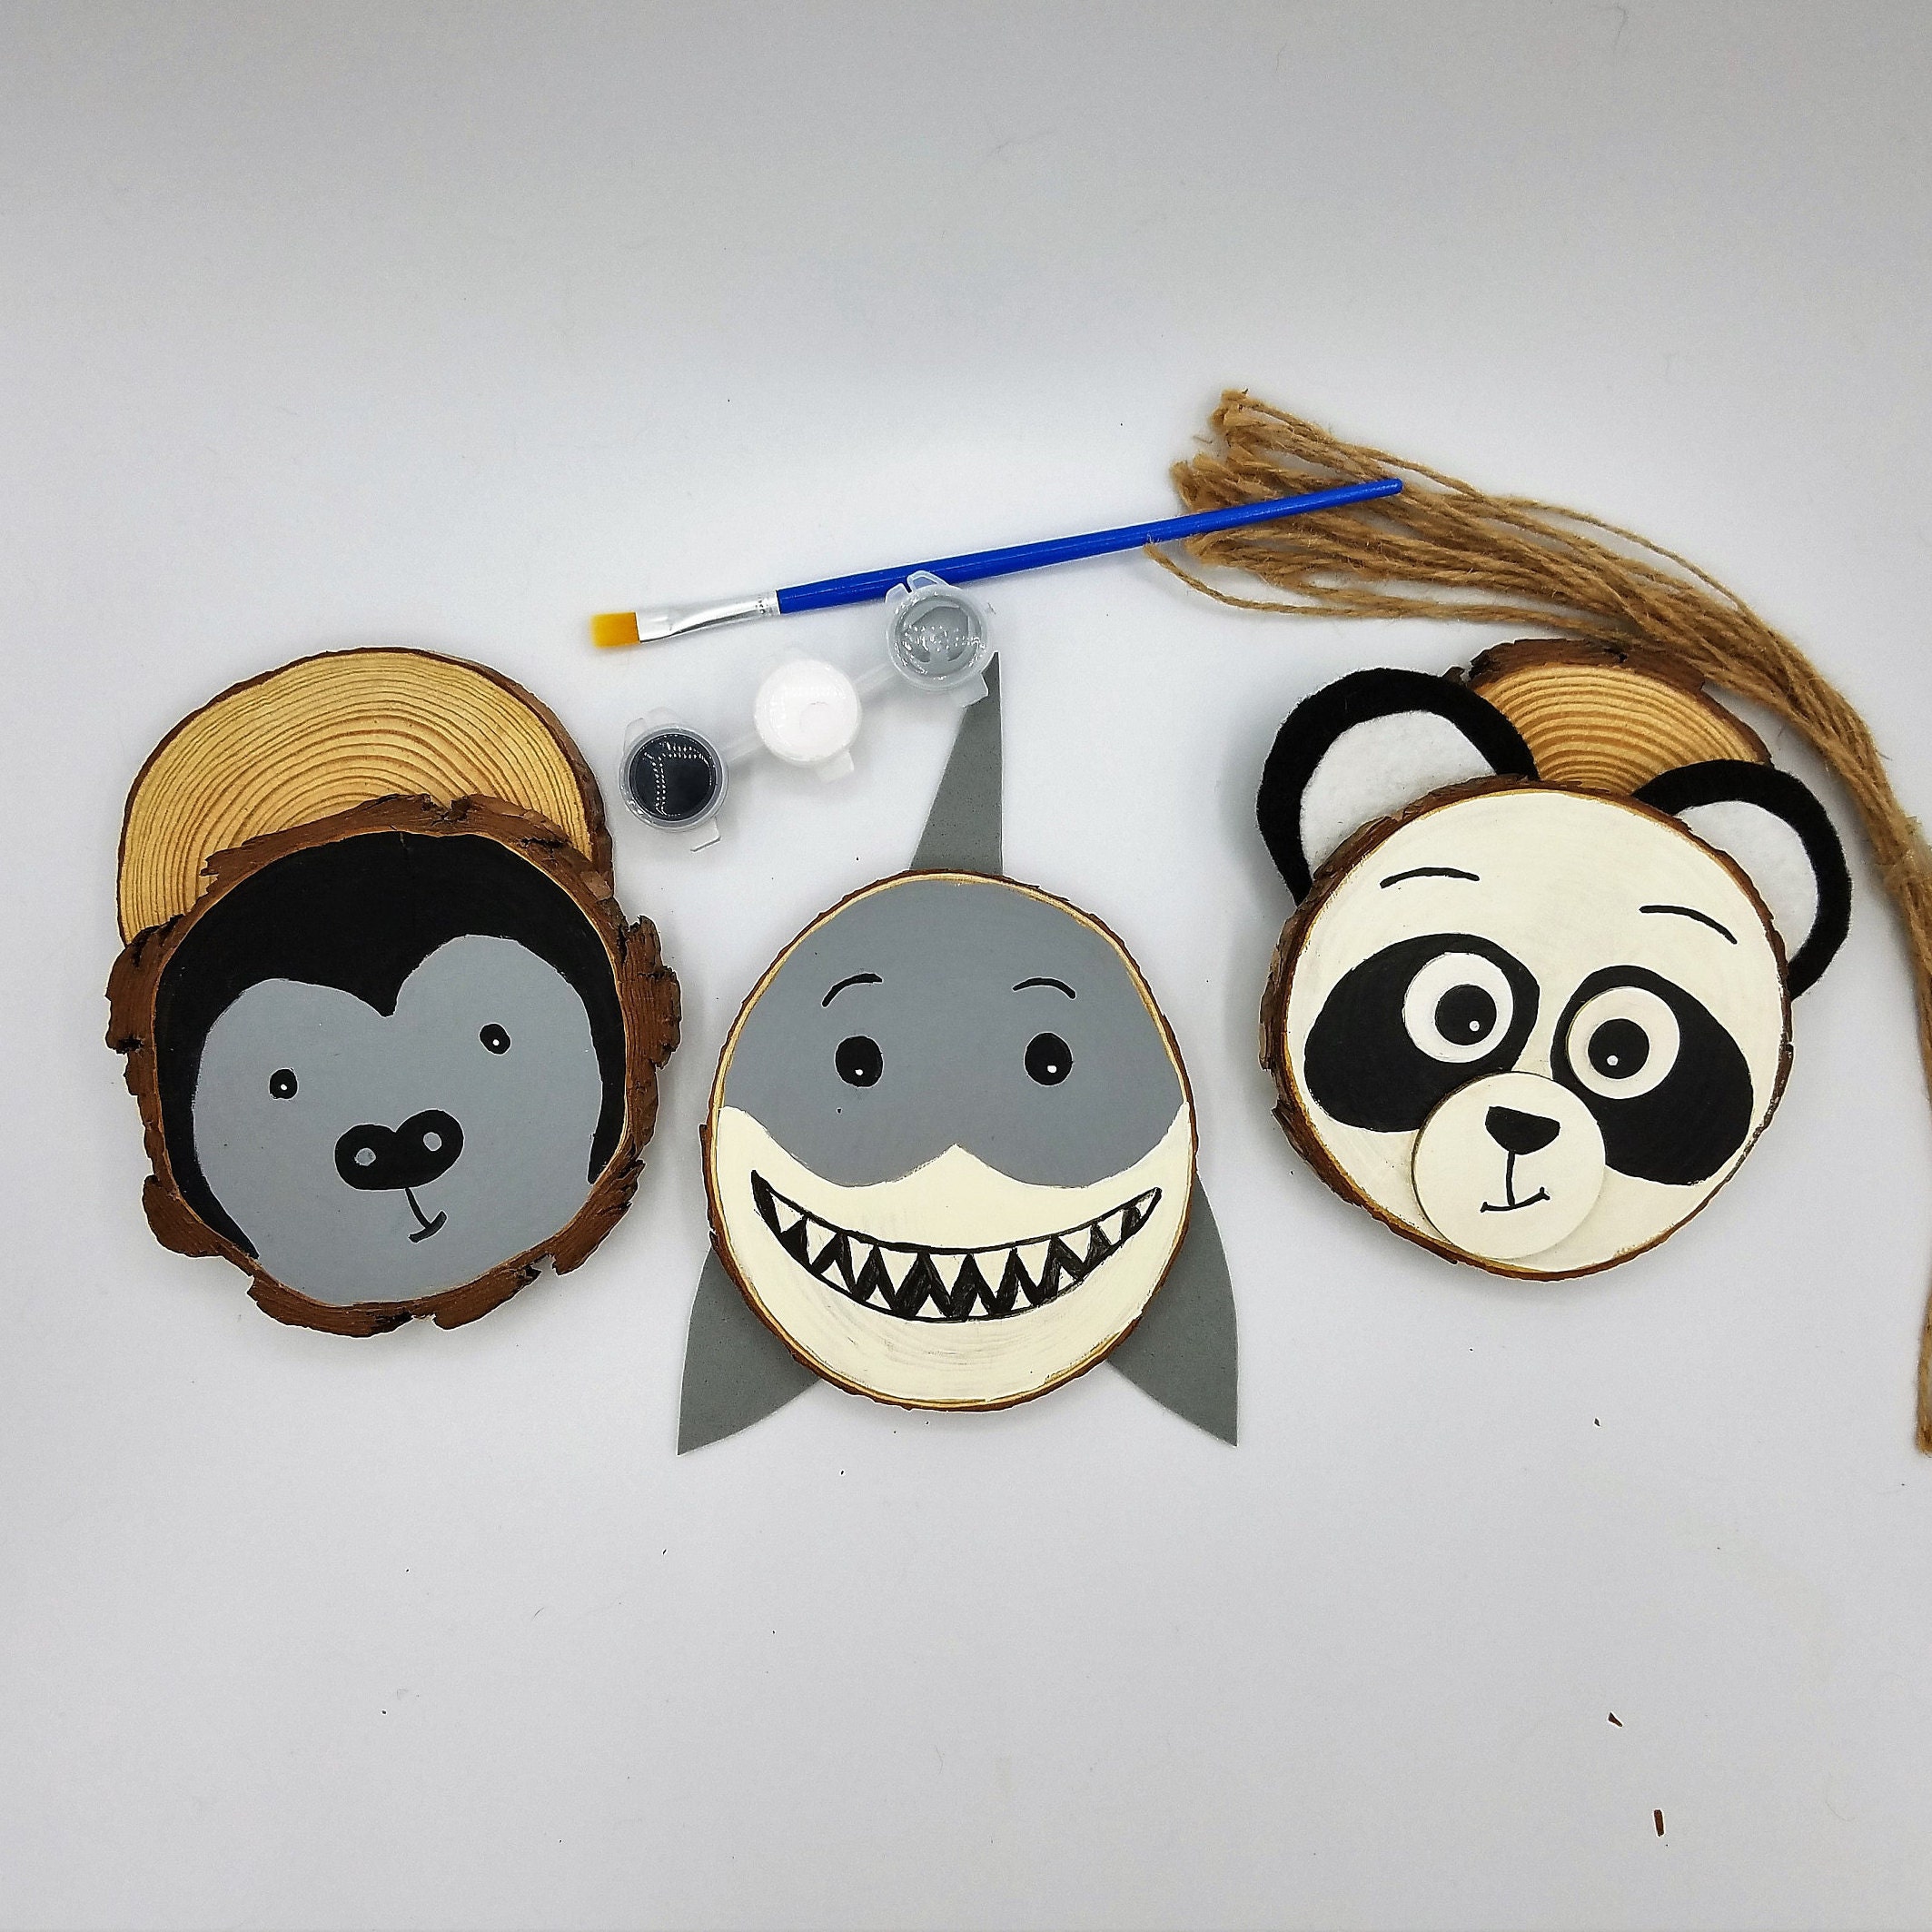 DIY Art Craft Kit for Kids